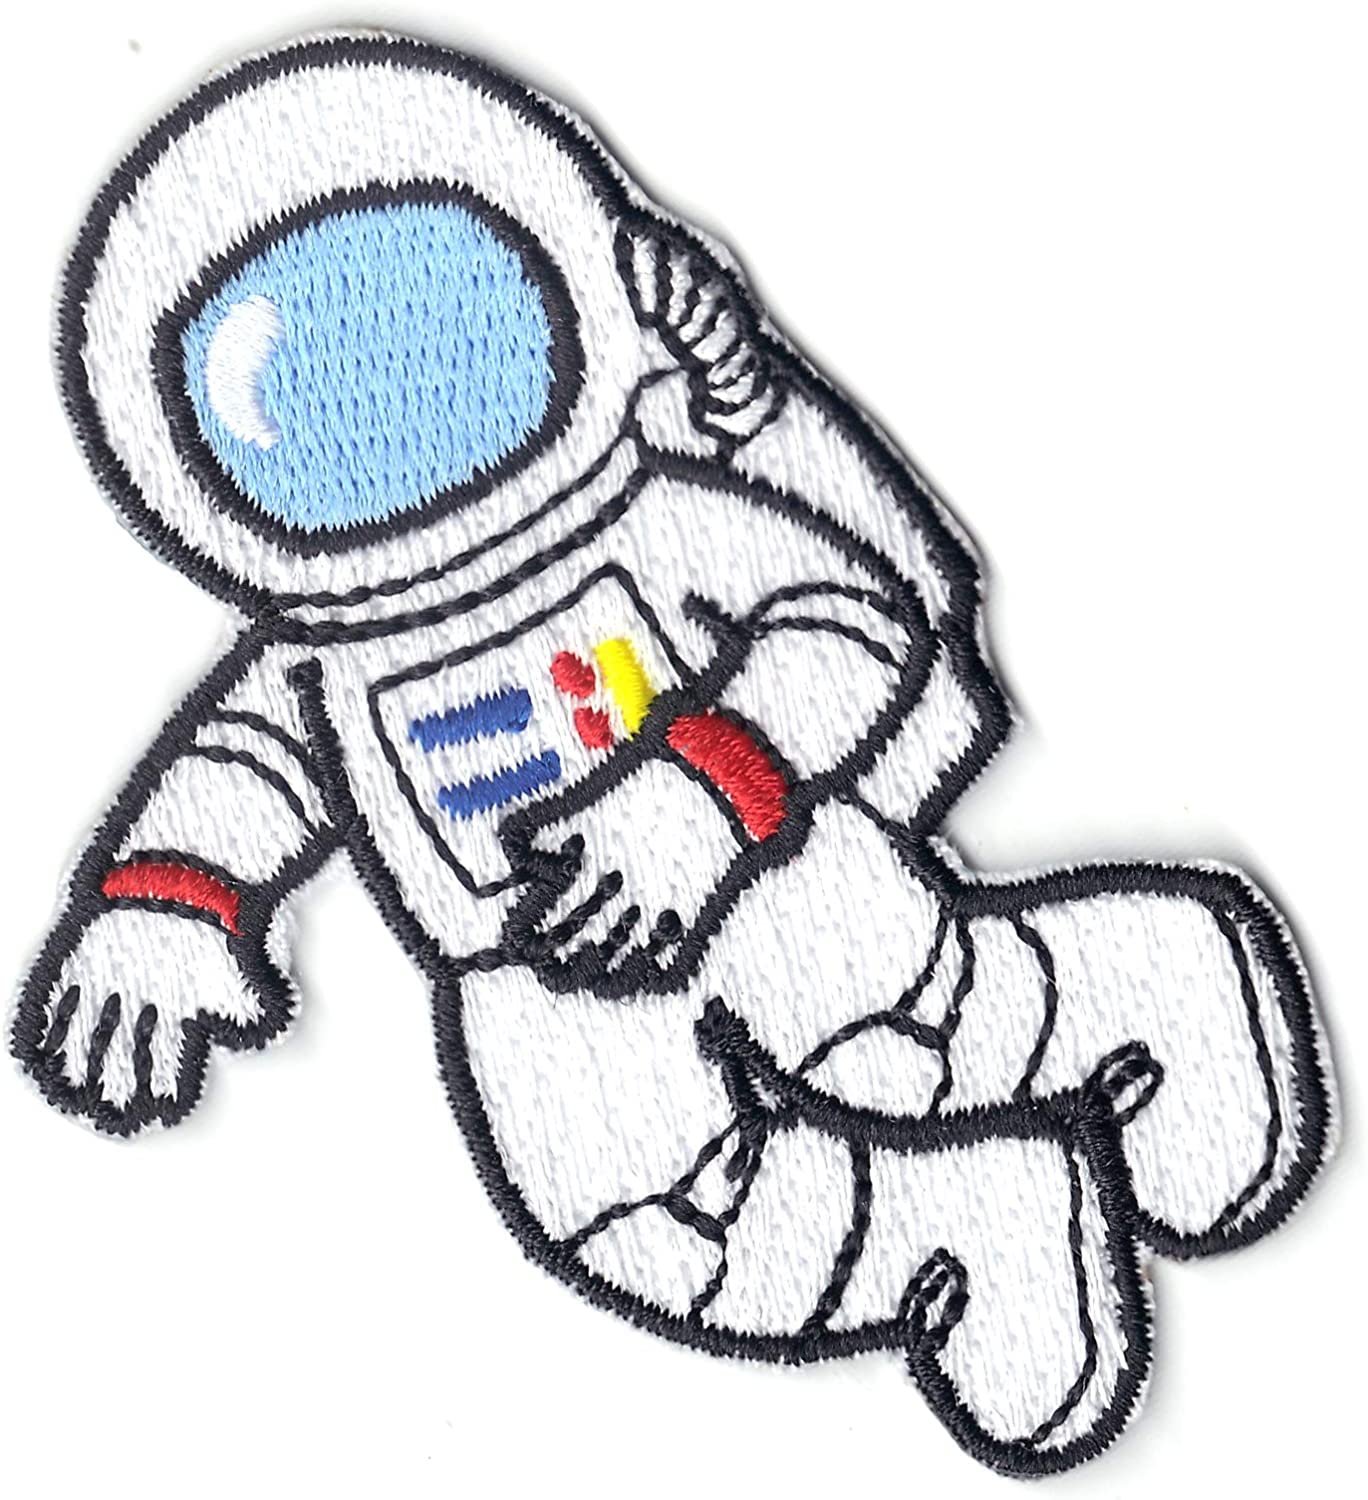 Маленький космонавт